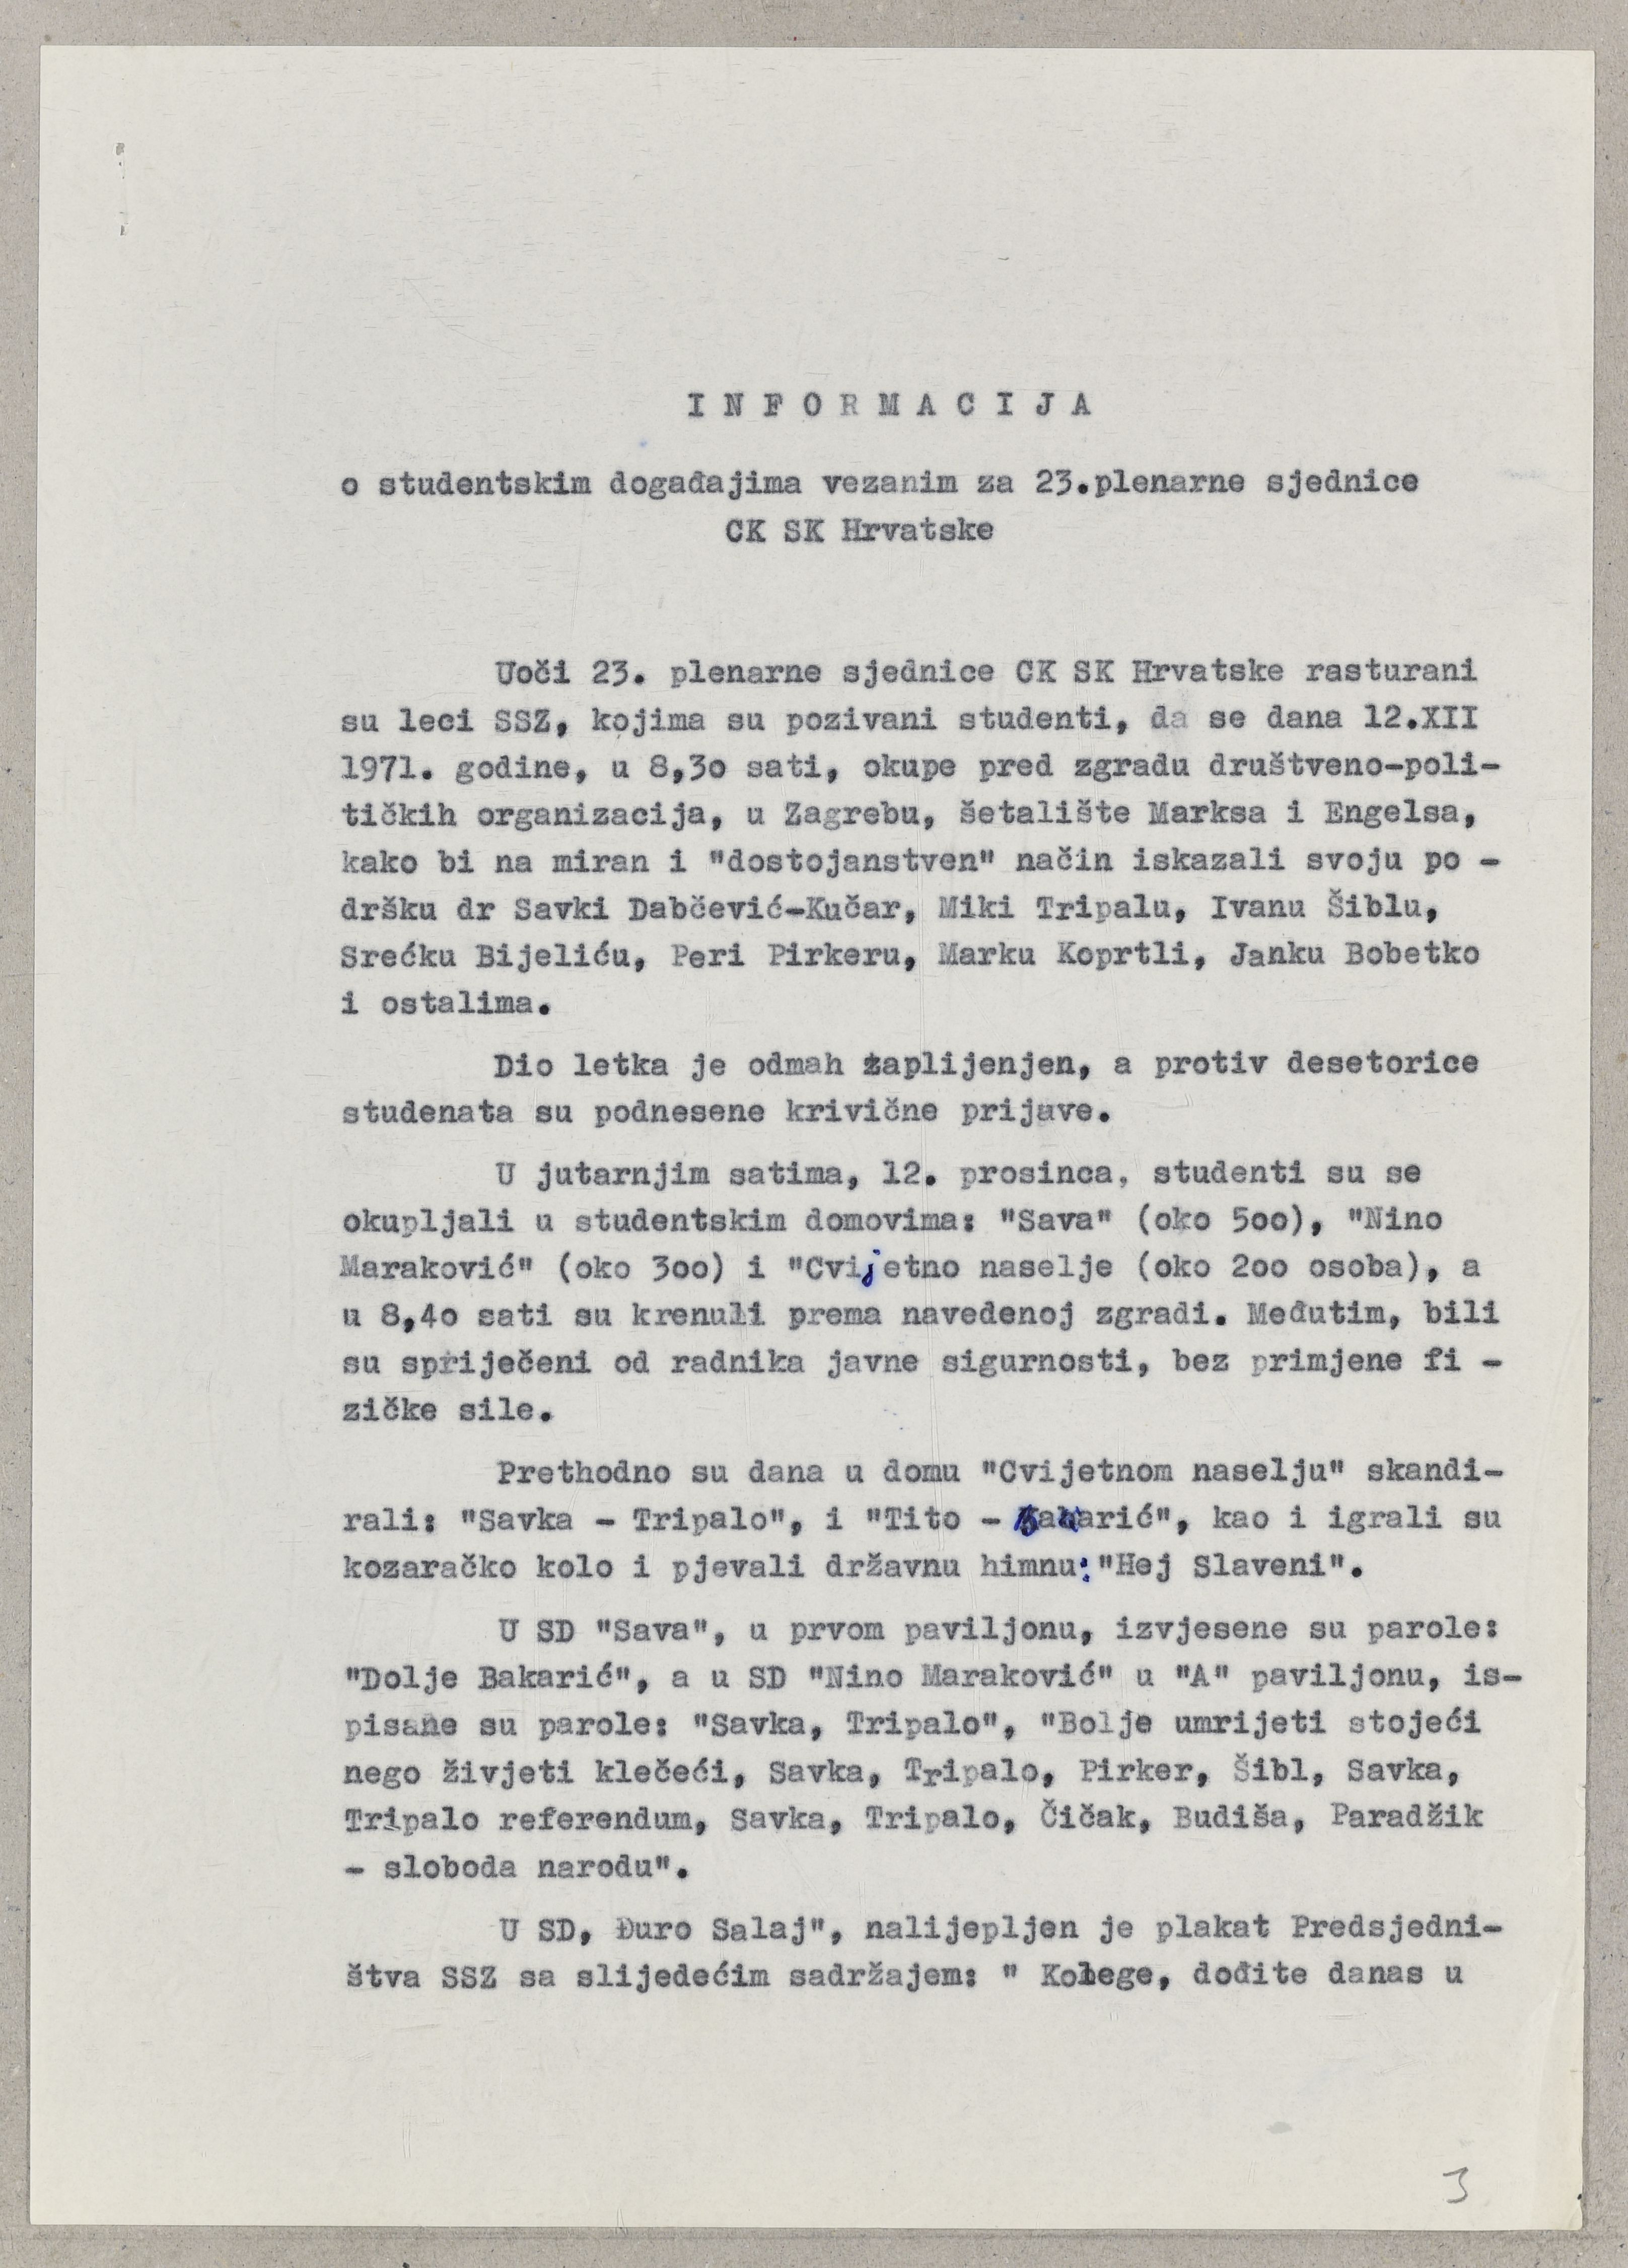 Informacija o studentskim događanjima vezanim uz 23. plenarnu sjednicu Centralnog komiteta Saveza komunista Hrvatske. 13. prosinca 1971. Arhivski dokument.